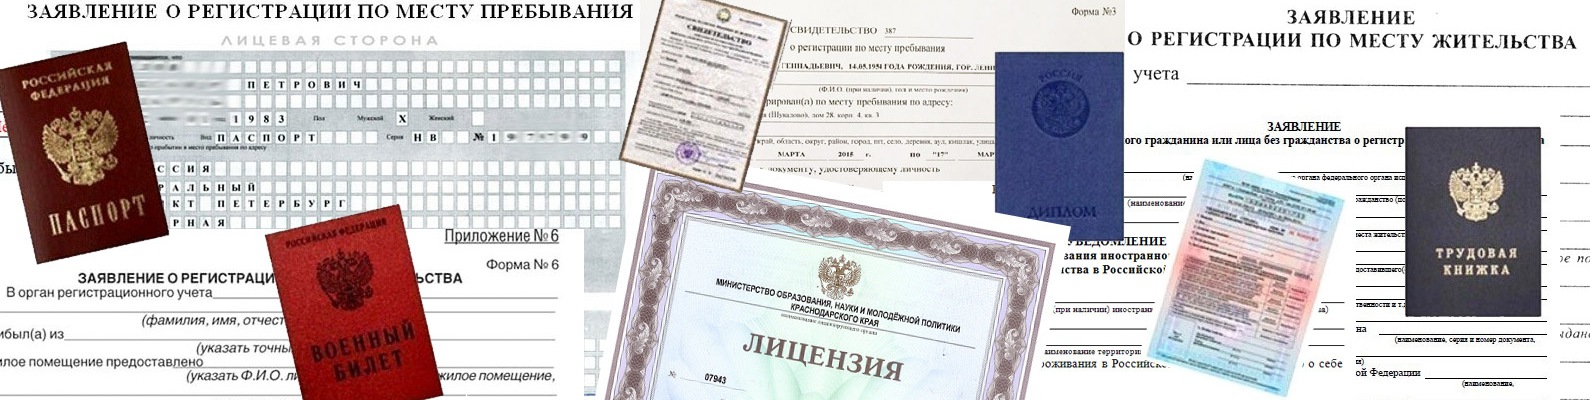 Регистрация по месту пребывания для граждан РФ - зарегистрироваться где проживаешь